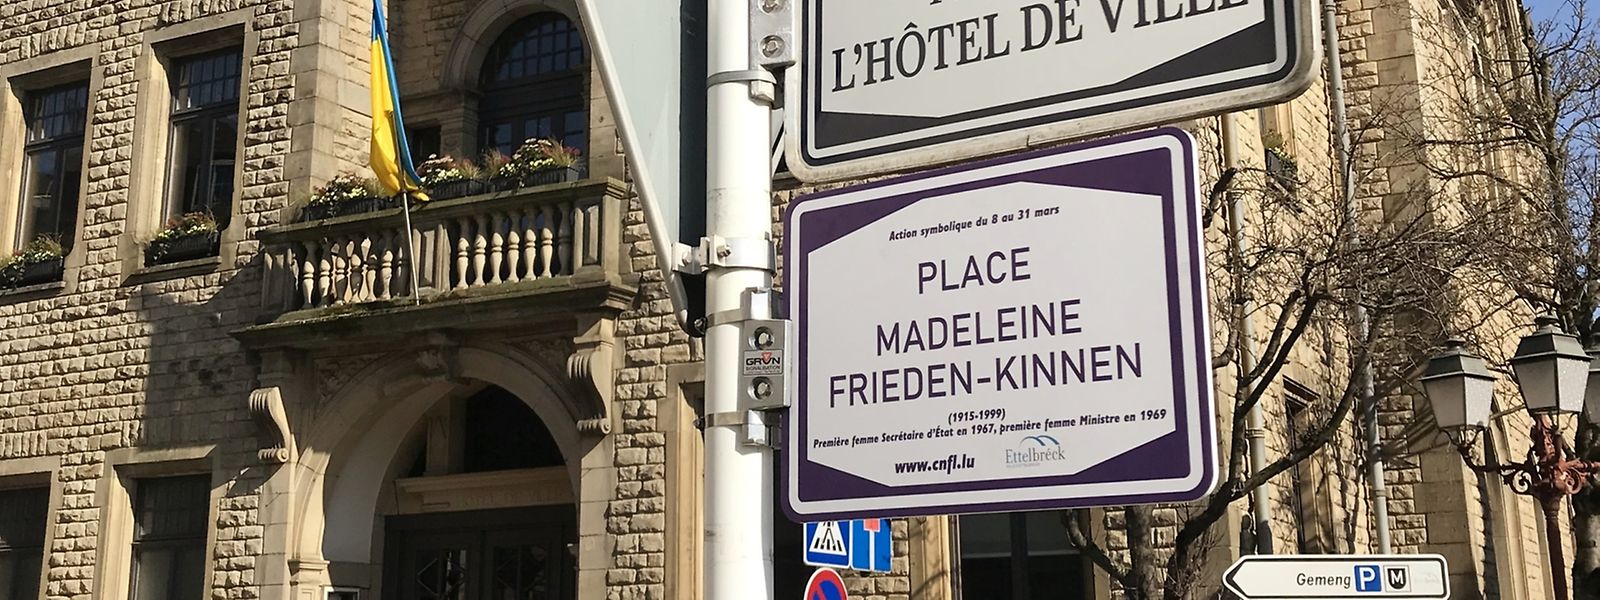 Der Stadthausplatz in Ettelbrück ist der ehemaligen Politikerin Madeleine Frieden-Kinnen gewidmet. 